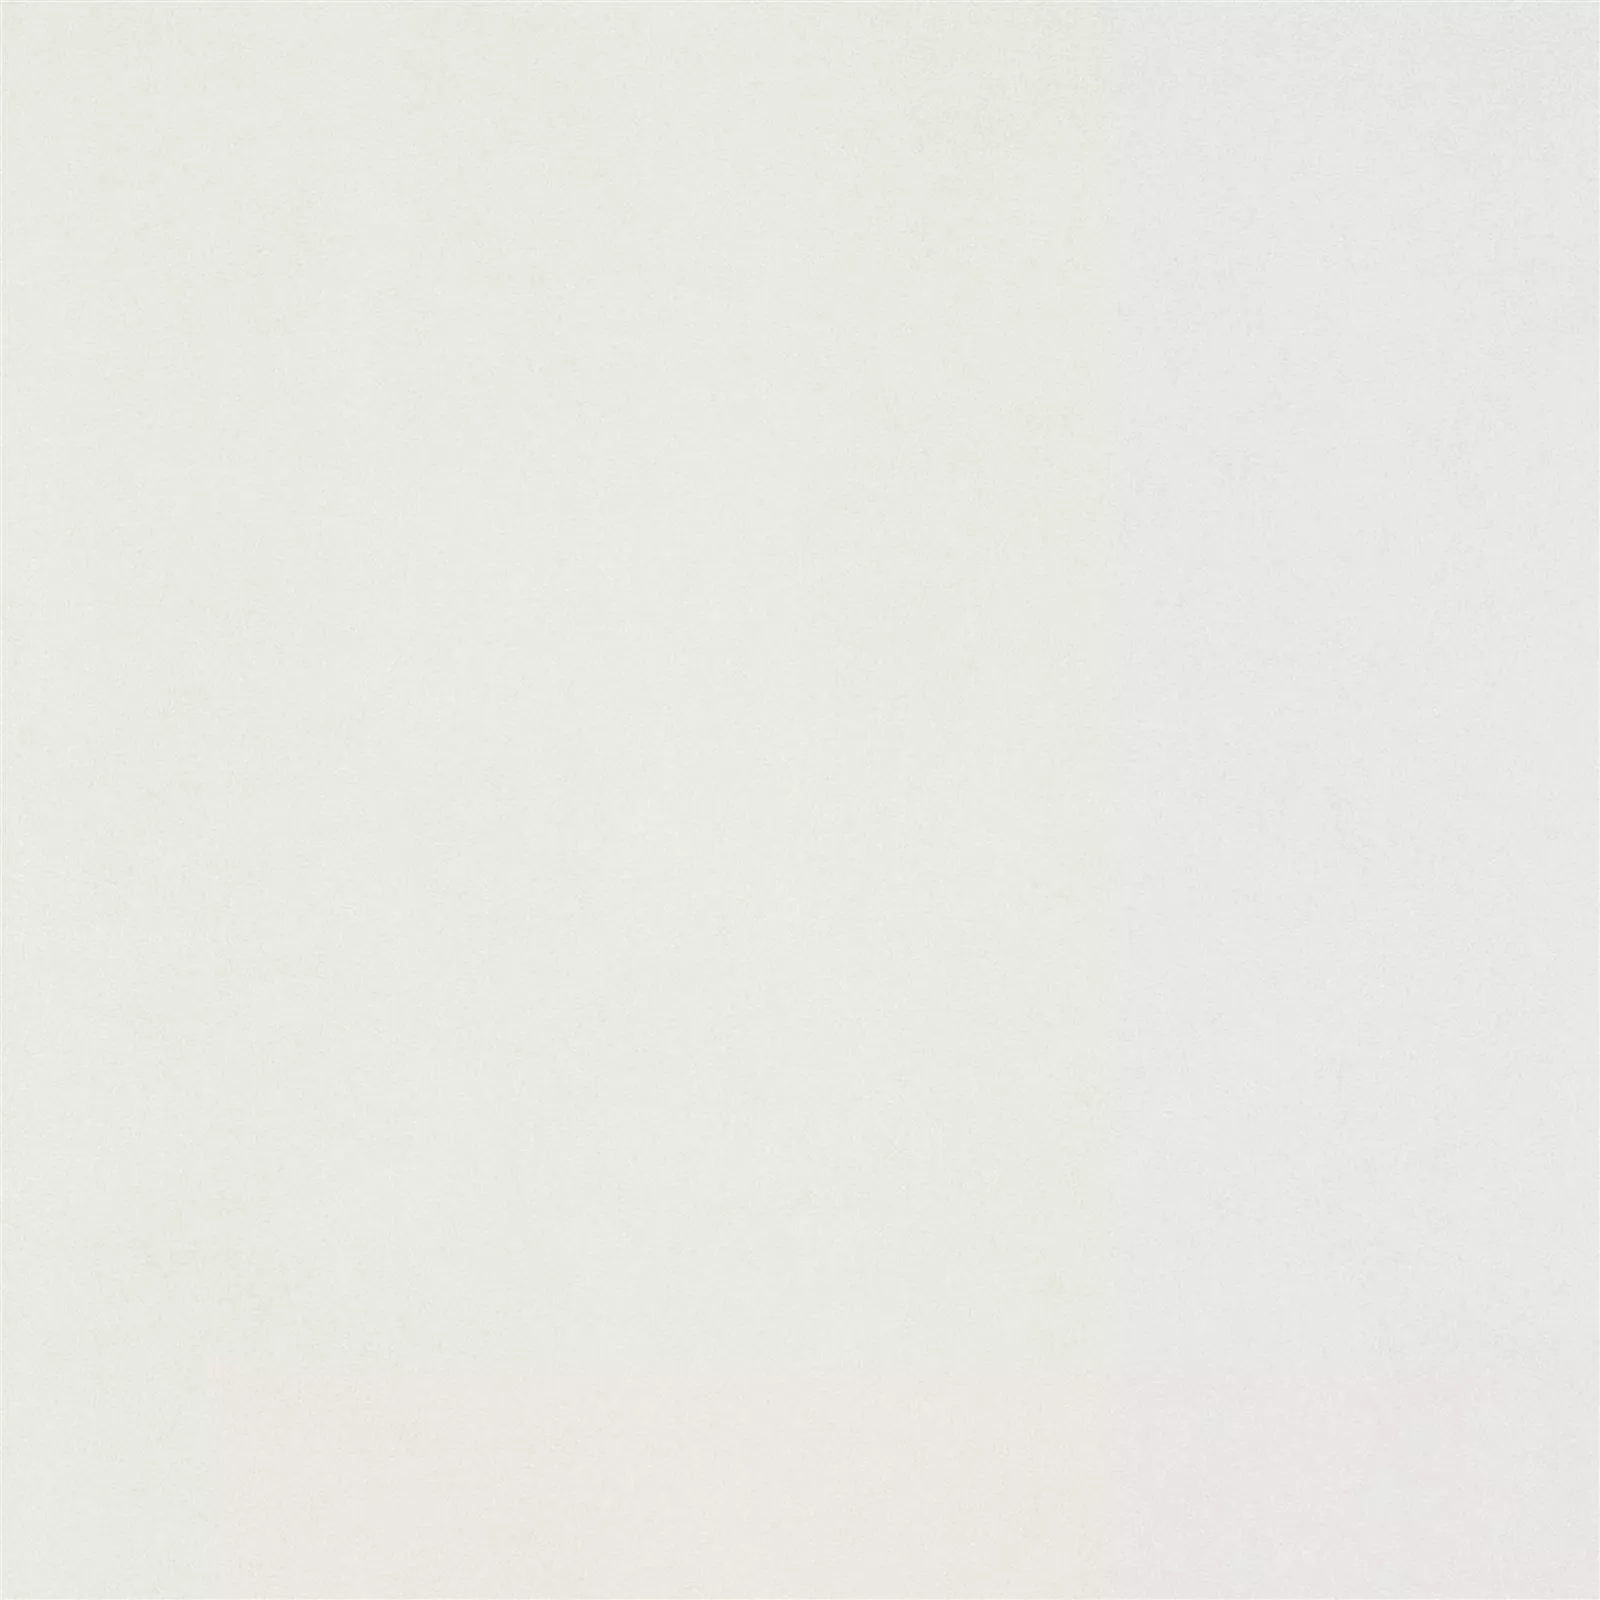 Πρότυπο Πλακάκι Δαπέδου Mainland Συγκεκριμένη Εμφάνιση Αμεμπτος 60x60cm Ασπρο